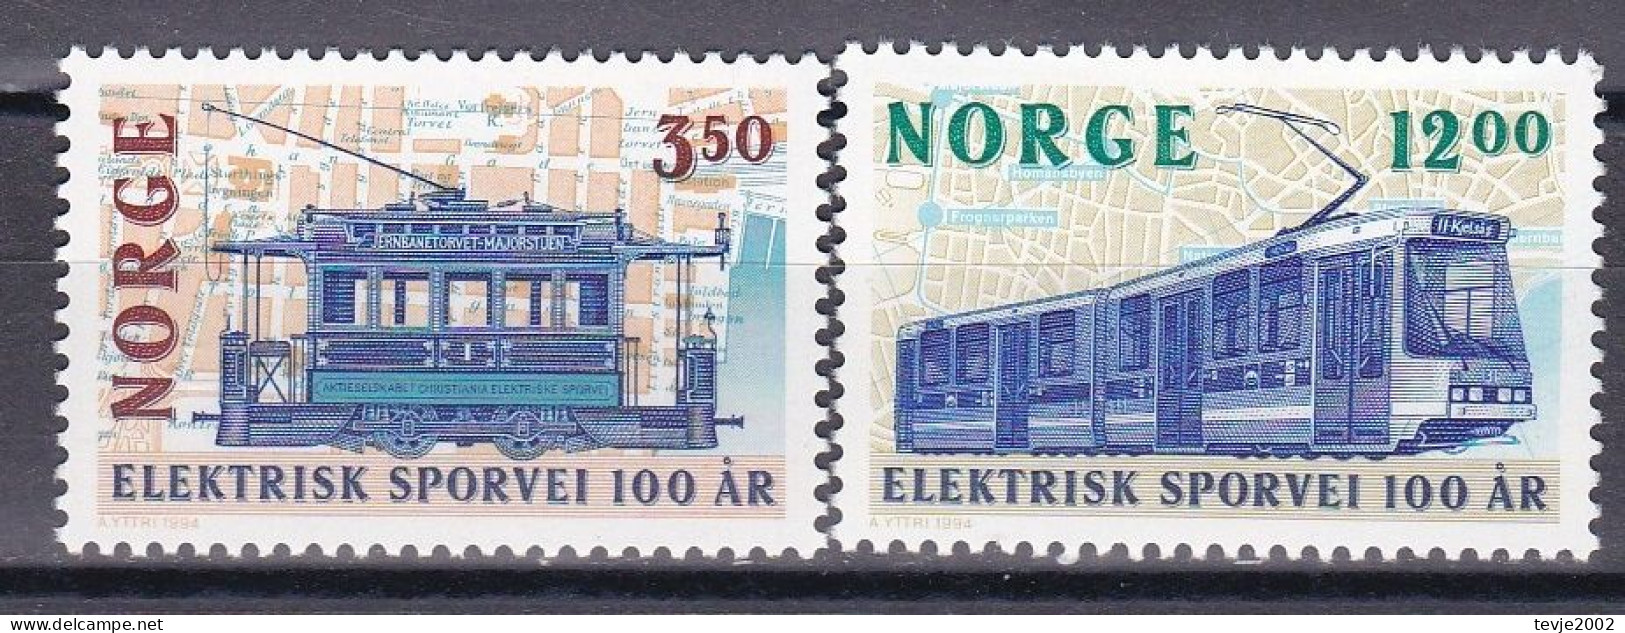 Norwegen Norge 1994 - Mi.Nr. 1163 - 1164 - Postfrisch MNH - Straßenbahn Tram - Strassenbahnen